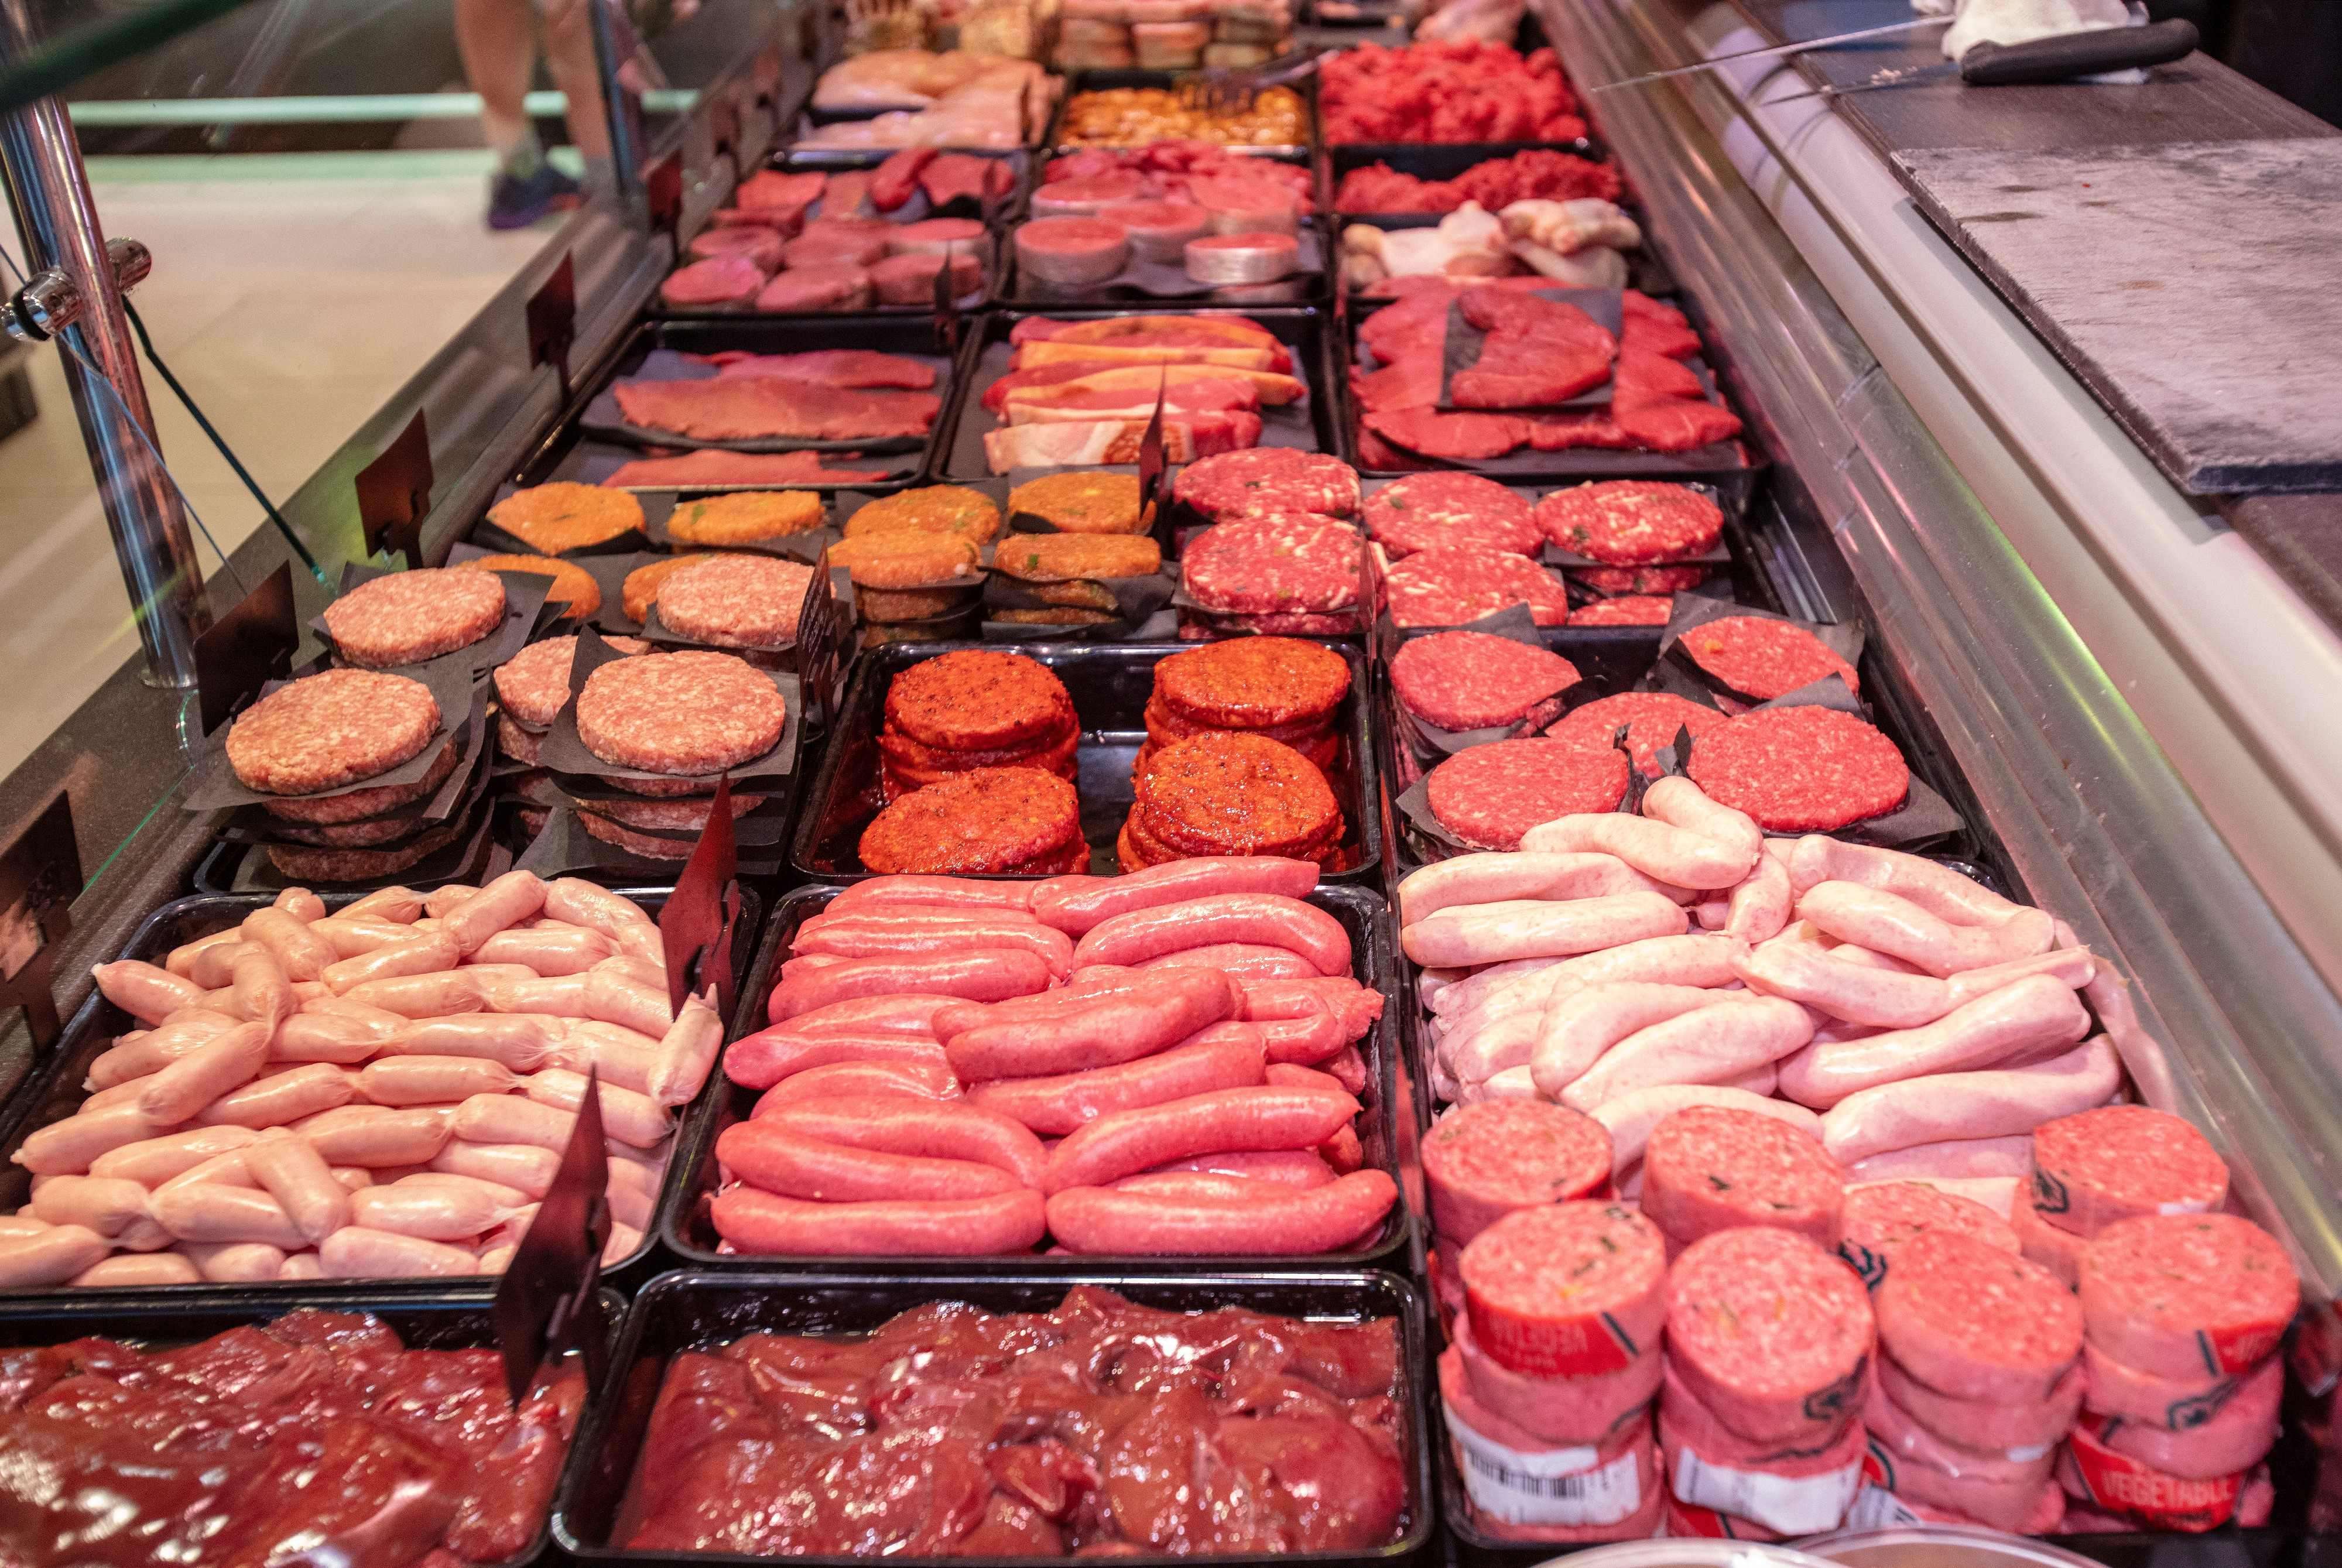 اللحوم المصنعة في قائمة المواد الغذائية الأكثر ضررا بالصحة